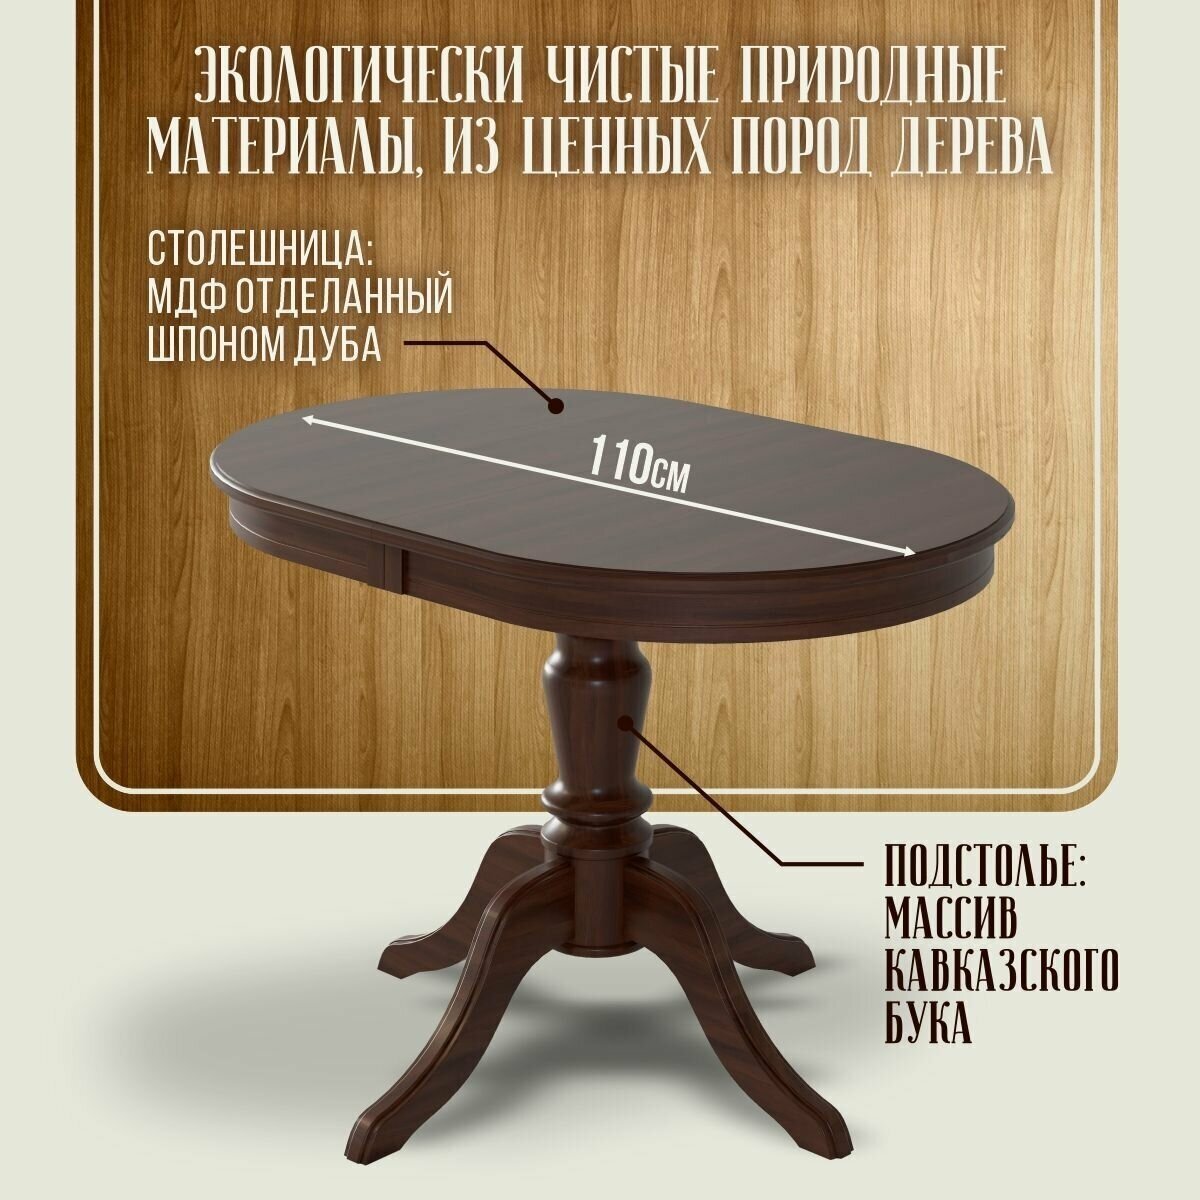 Стол обеденный "Капелла" Ренессанс раздвижной, 75 х 110 х 75 см, темный орех, шпон дуба, массив бука